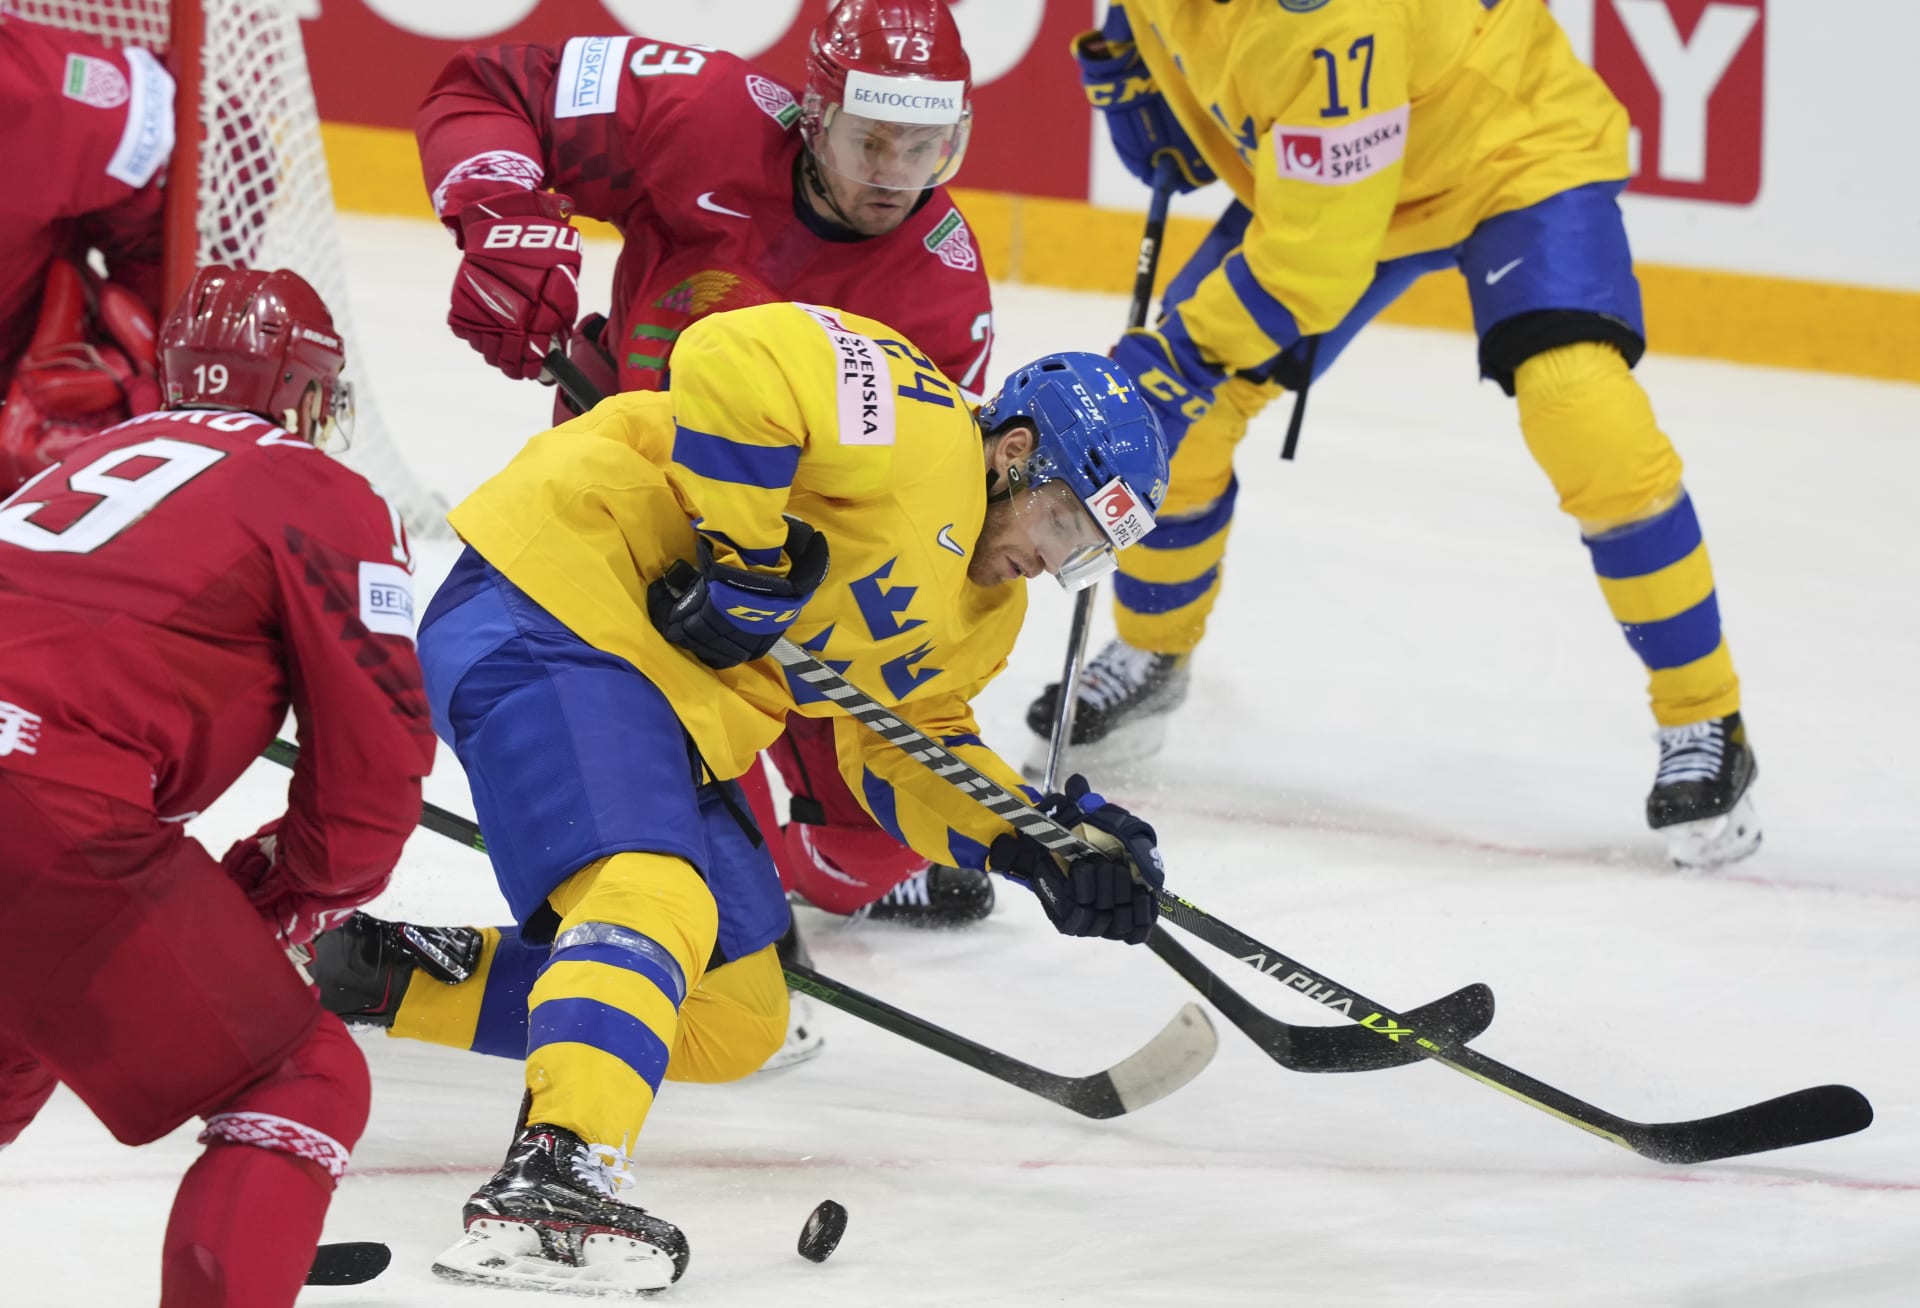 Hokejisté Švédska nečekaně prohráli i druhý zápas na mistrovství světa v Rize.